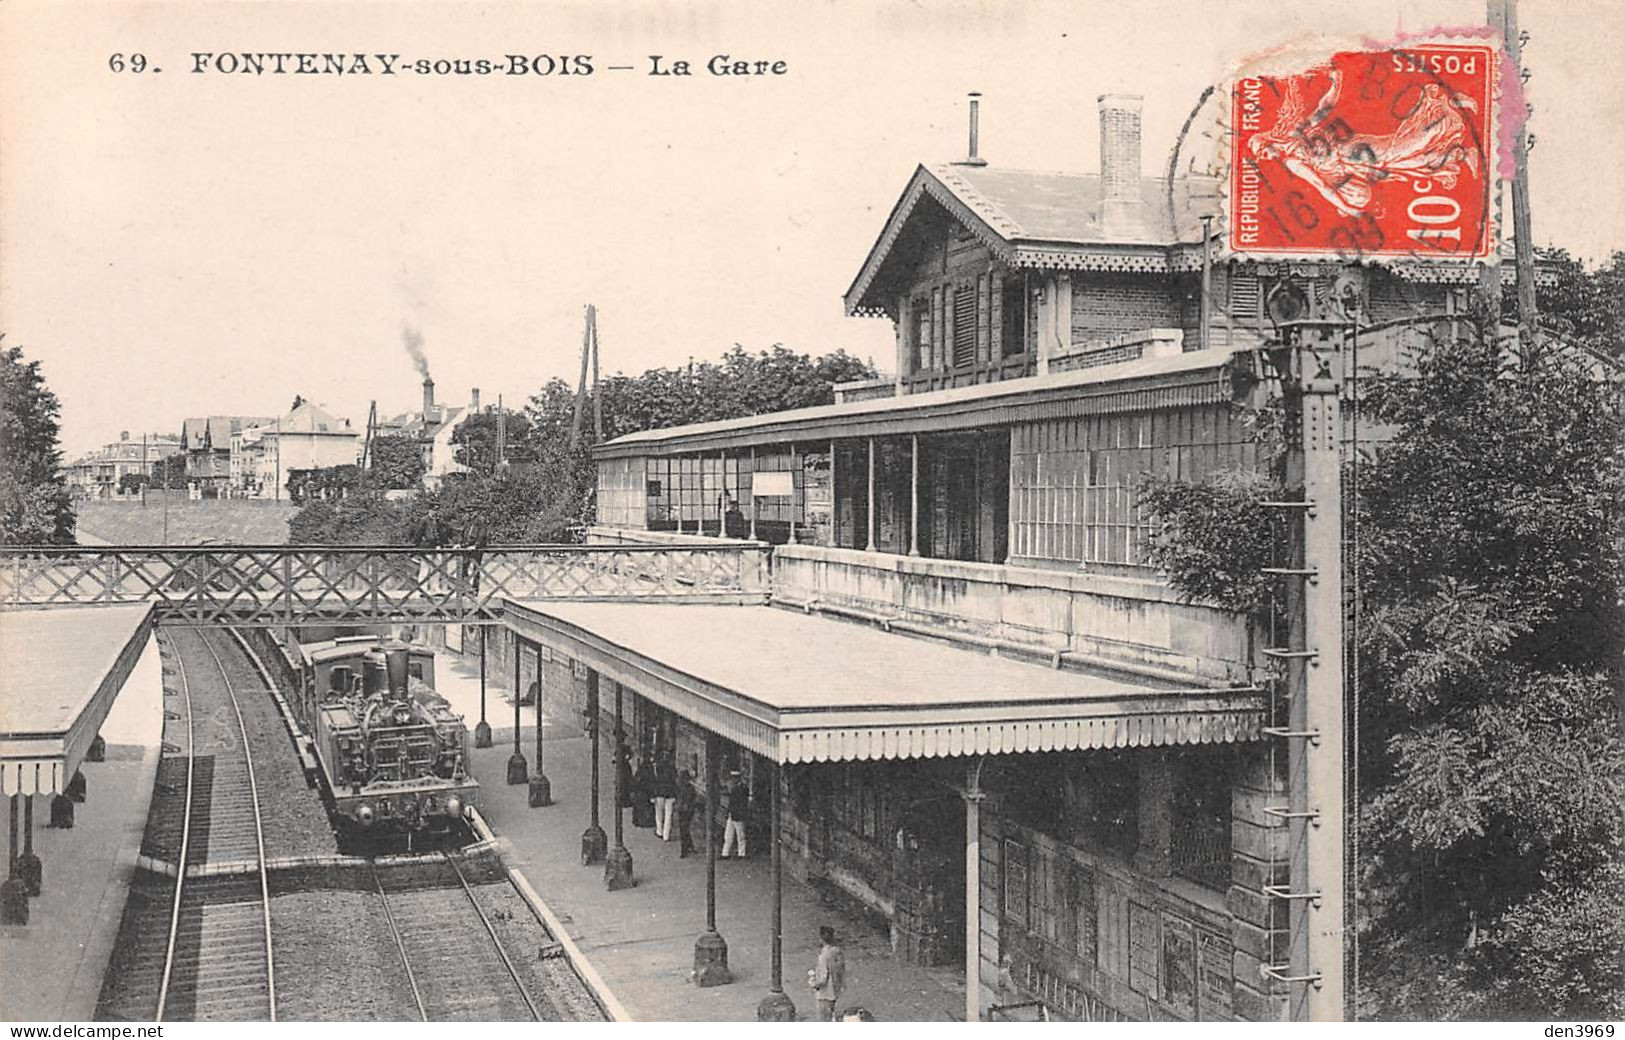 FONTENAY-sous-BOIS (Val-de-Marne) - La Gare - Arrivée Du Train - Voyagé 1909 (2 Scans) - Fontenay Sous Bois